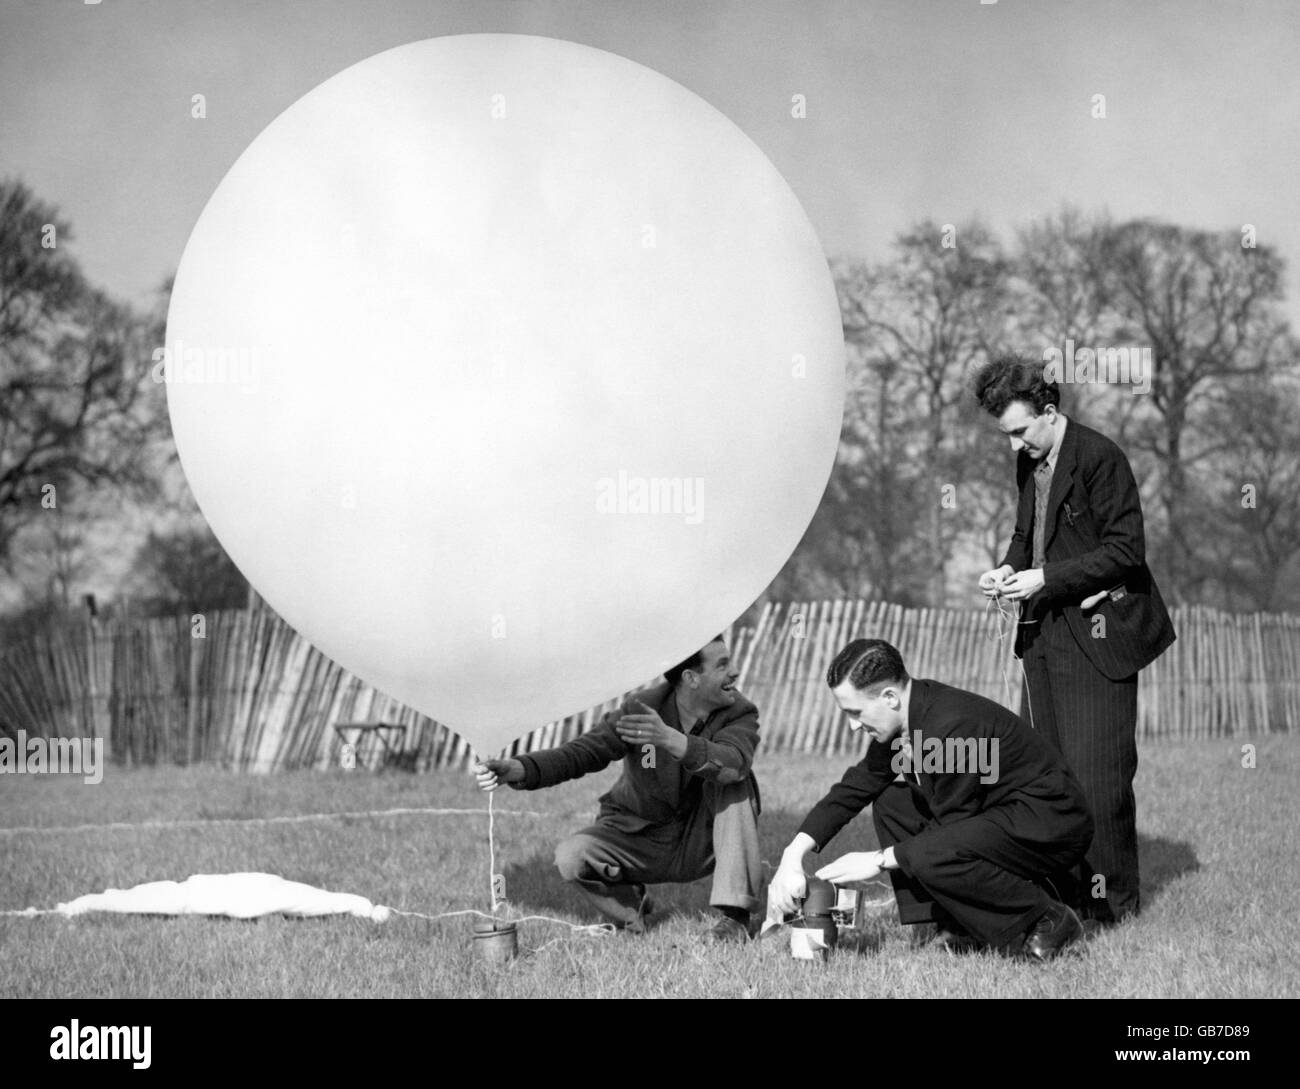 Pallone meteorologico immagini e fotografie stock ad alta risoluzione -  Alamy